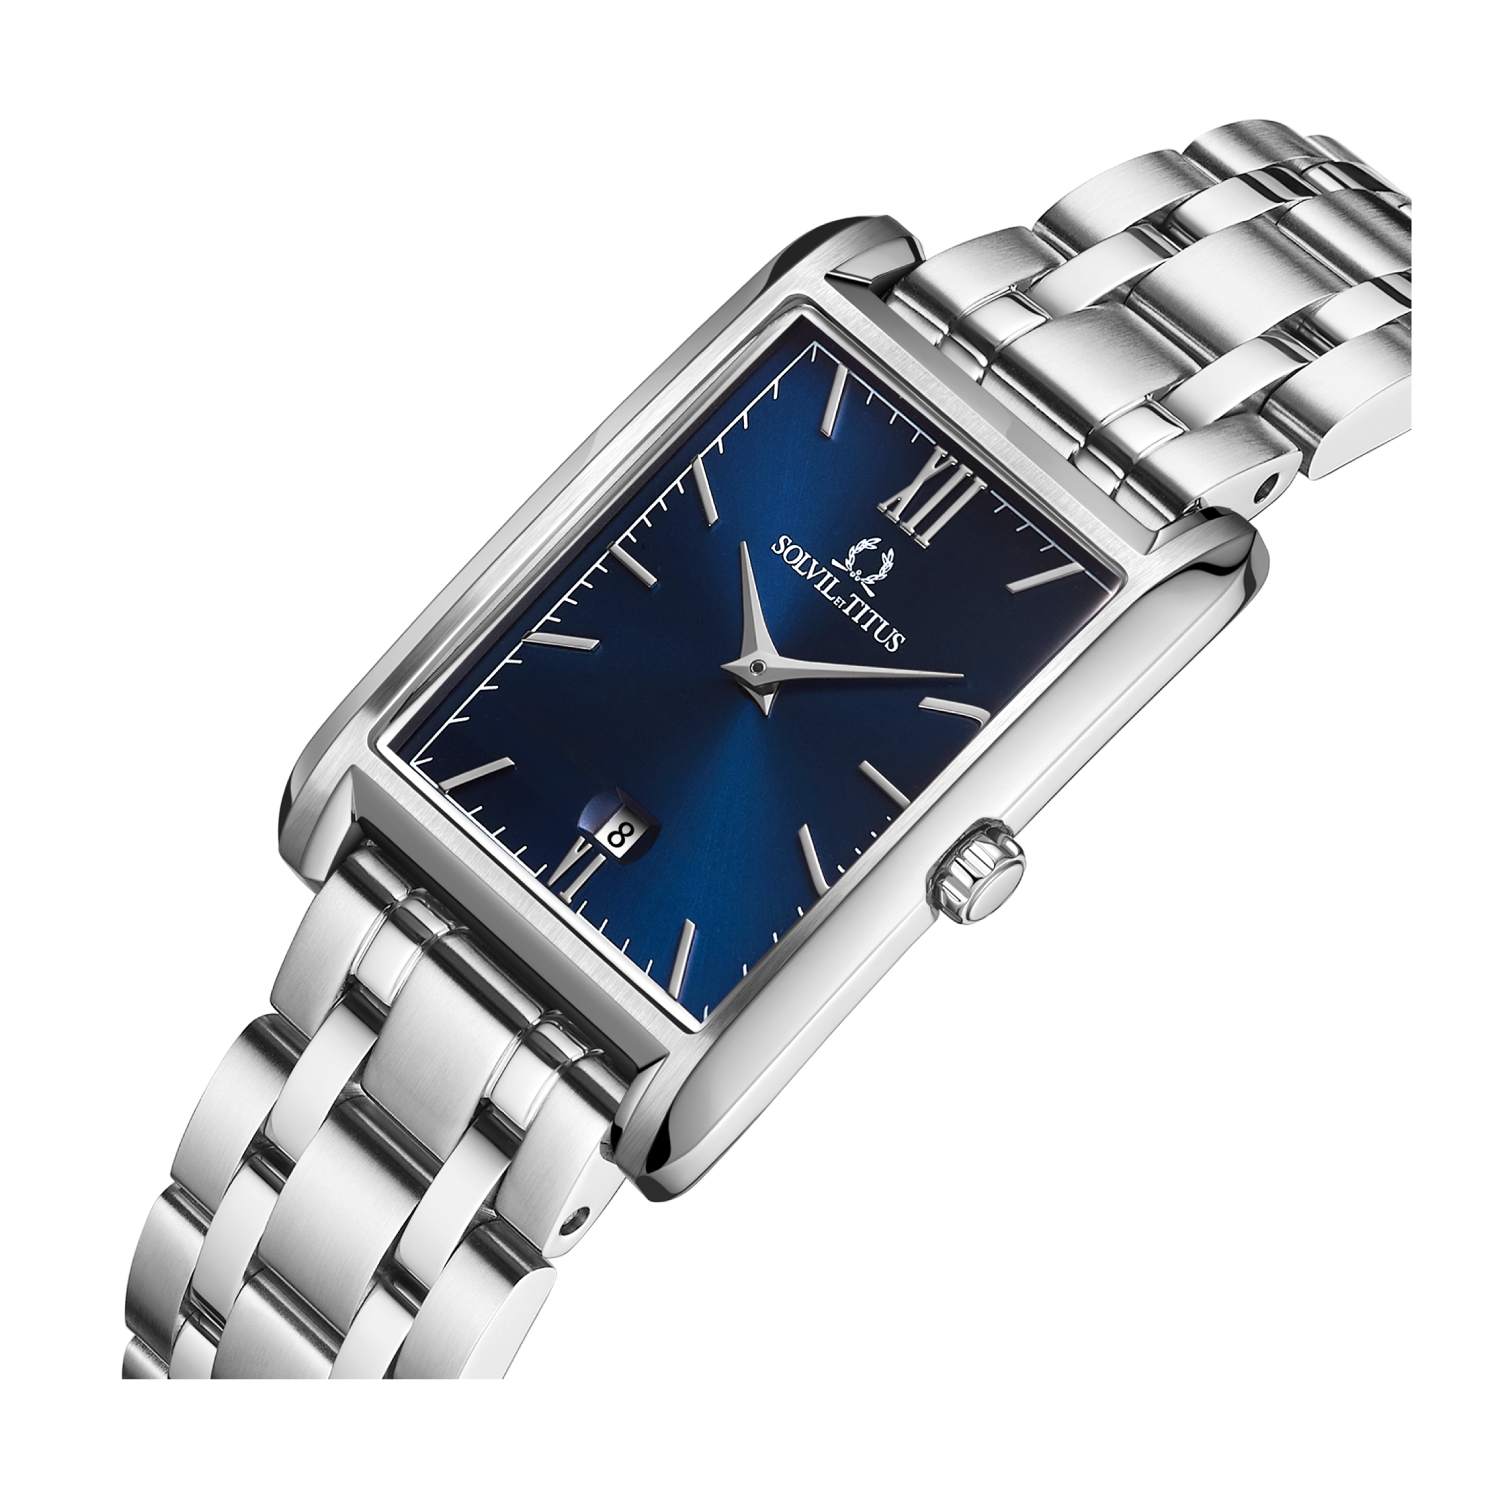 นาฬิกาผู้หญิง Classicist 2 เข็ม วันที่ ระบบควอตซ์ สายสแตนเลสสตีล ขนาดตัวเรือน 24 x 35.5 มม. (W06-03179-008)